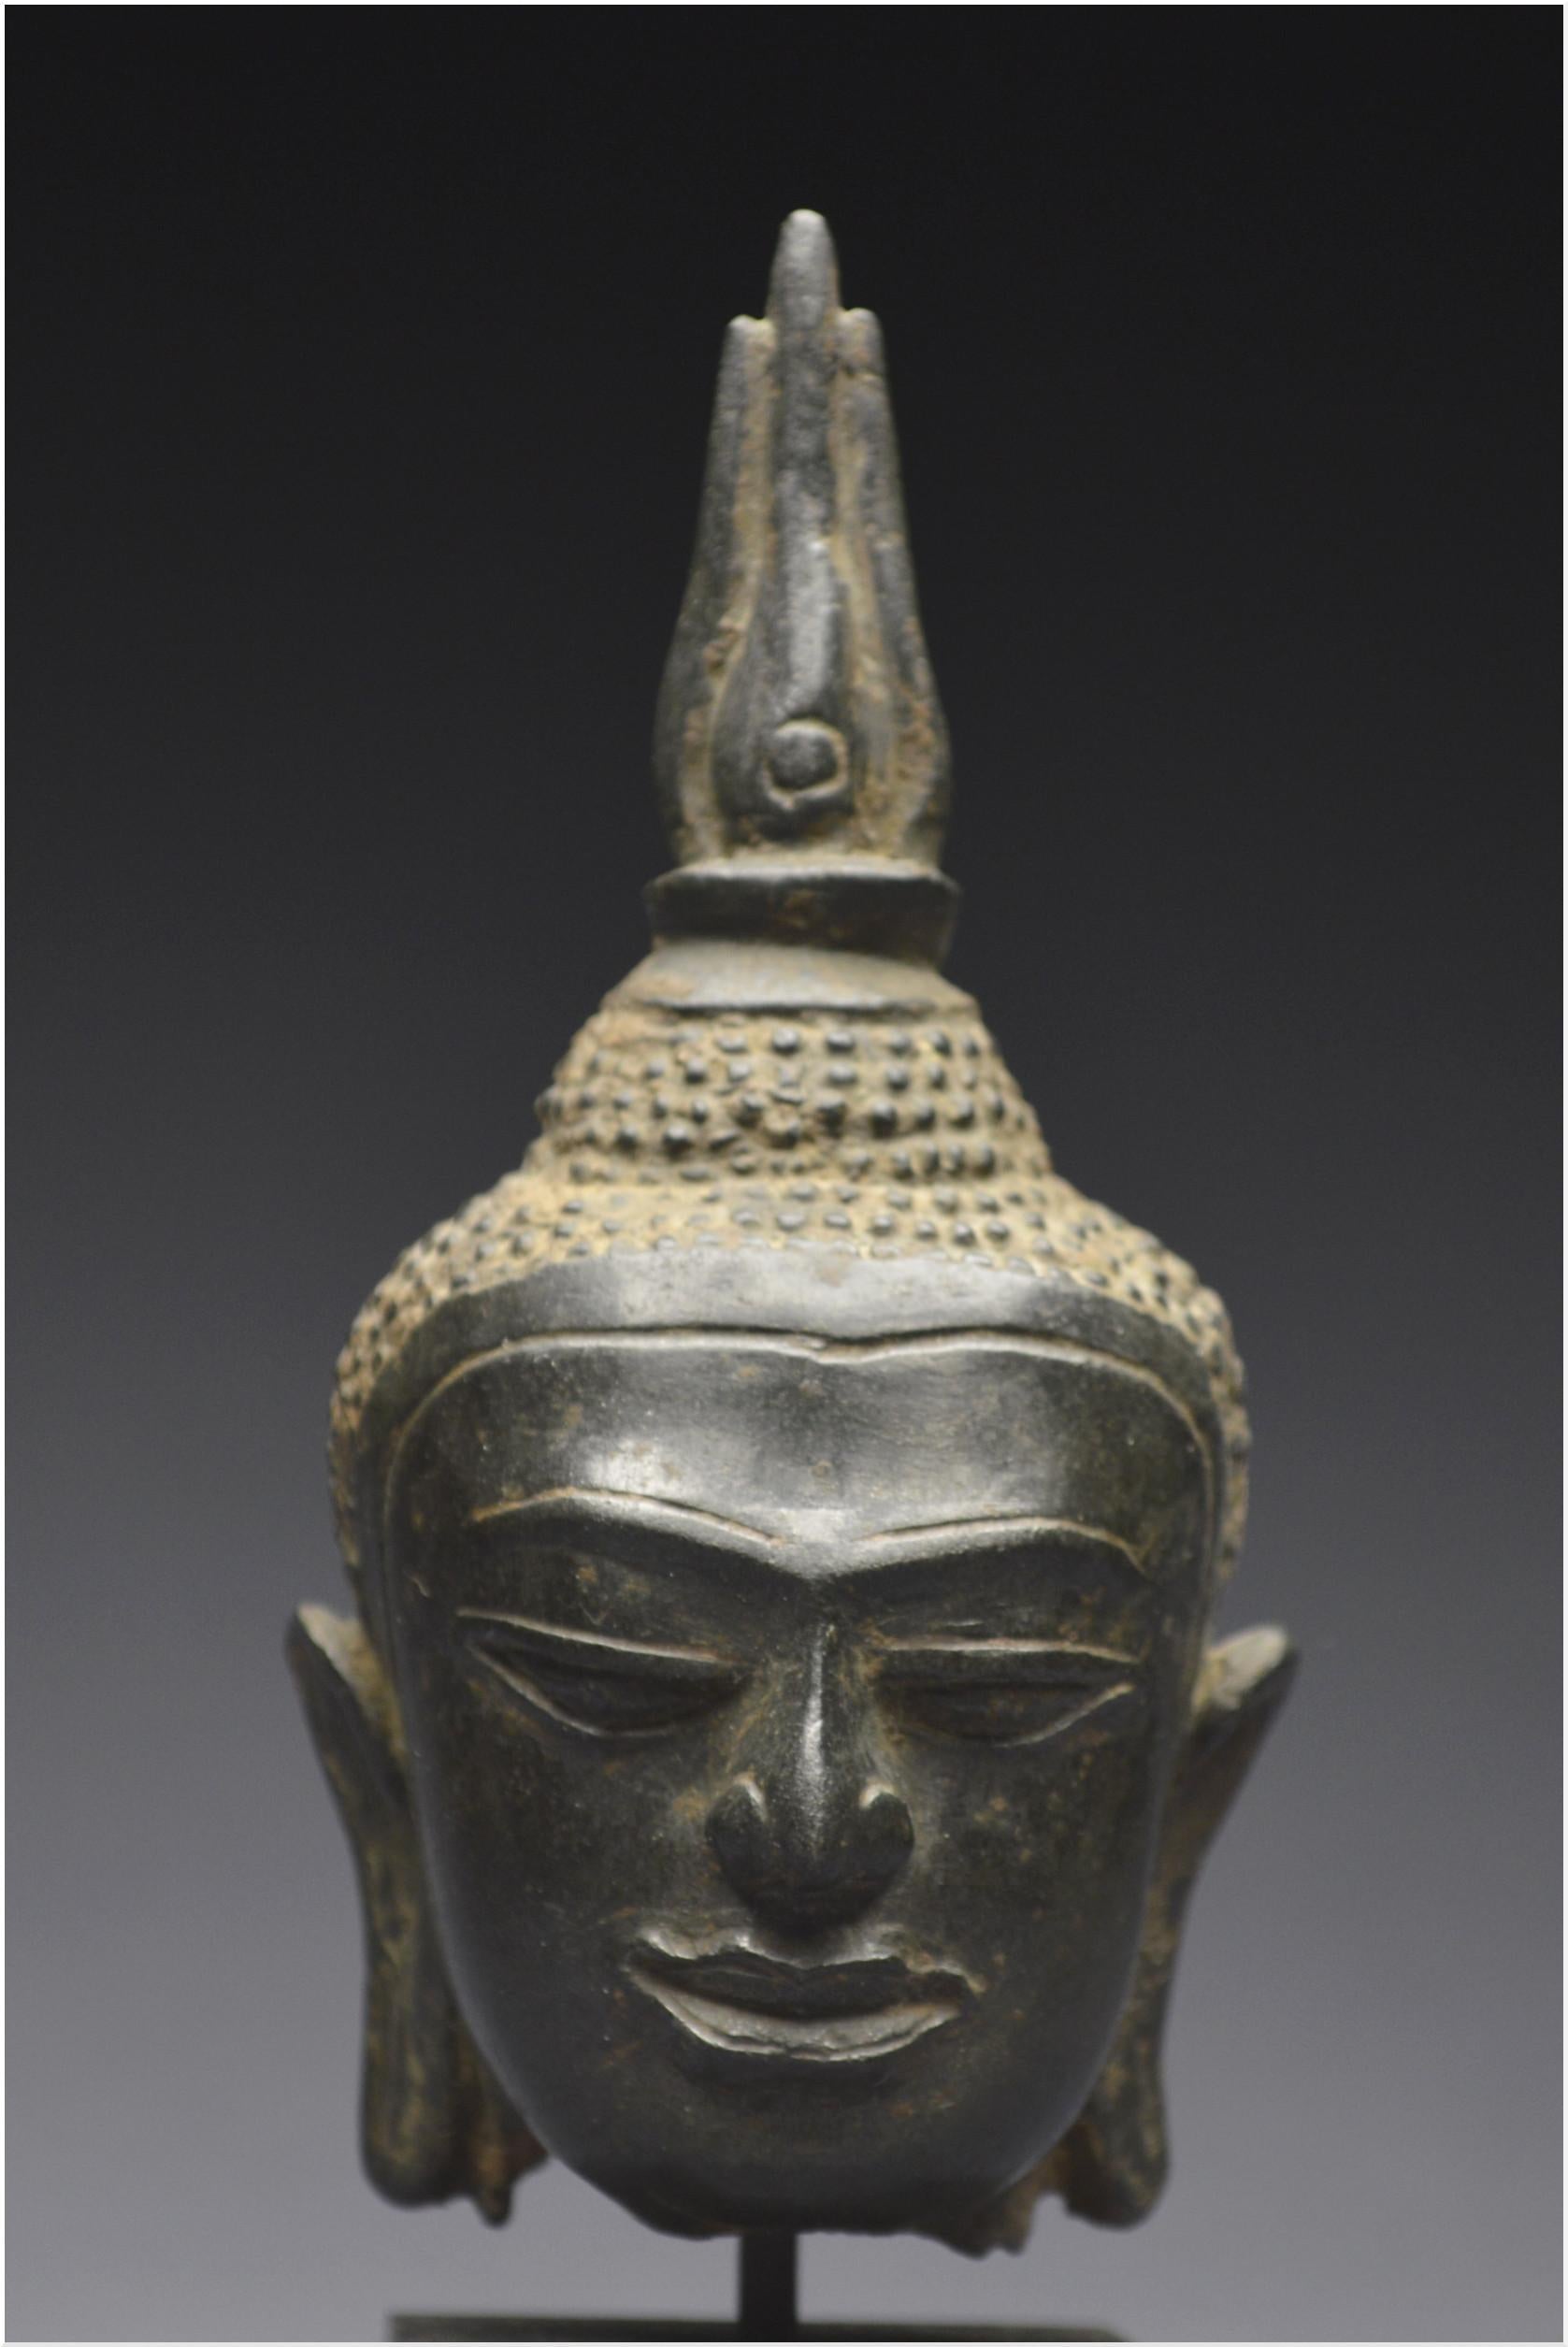 Thai Kingdom of Siam, 14th - 15th century, U-Thong style, Small bronze Buddha head 